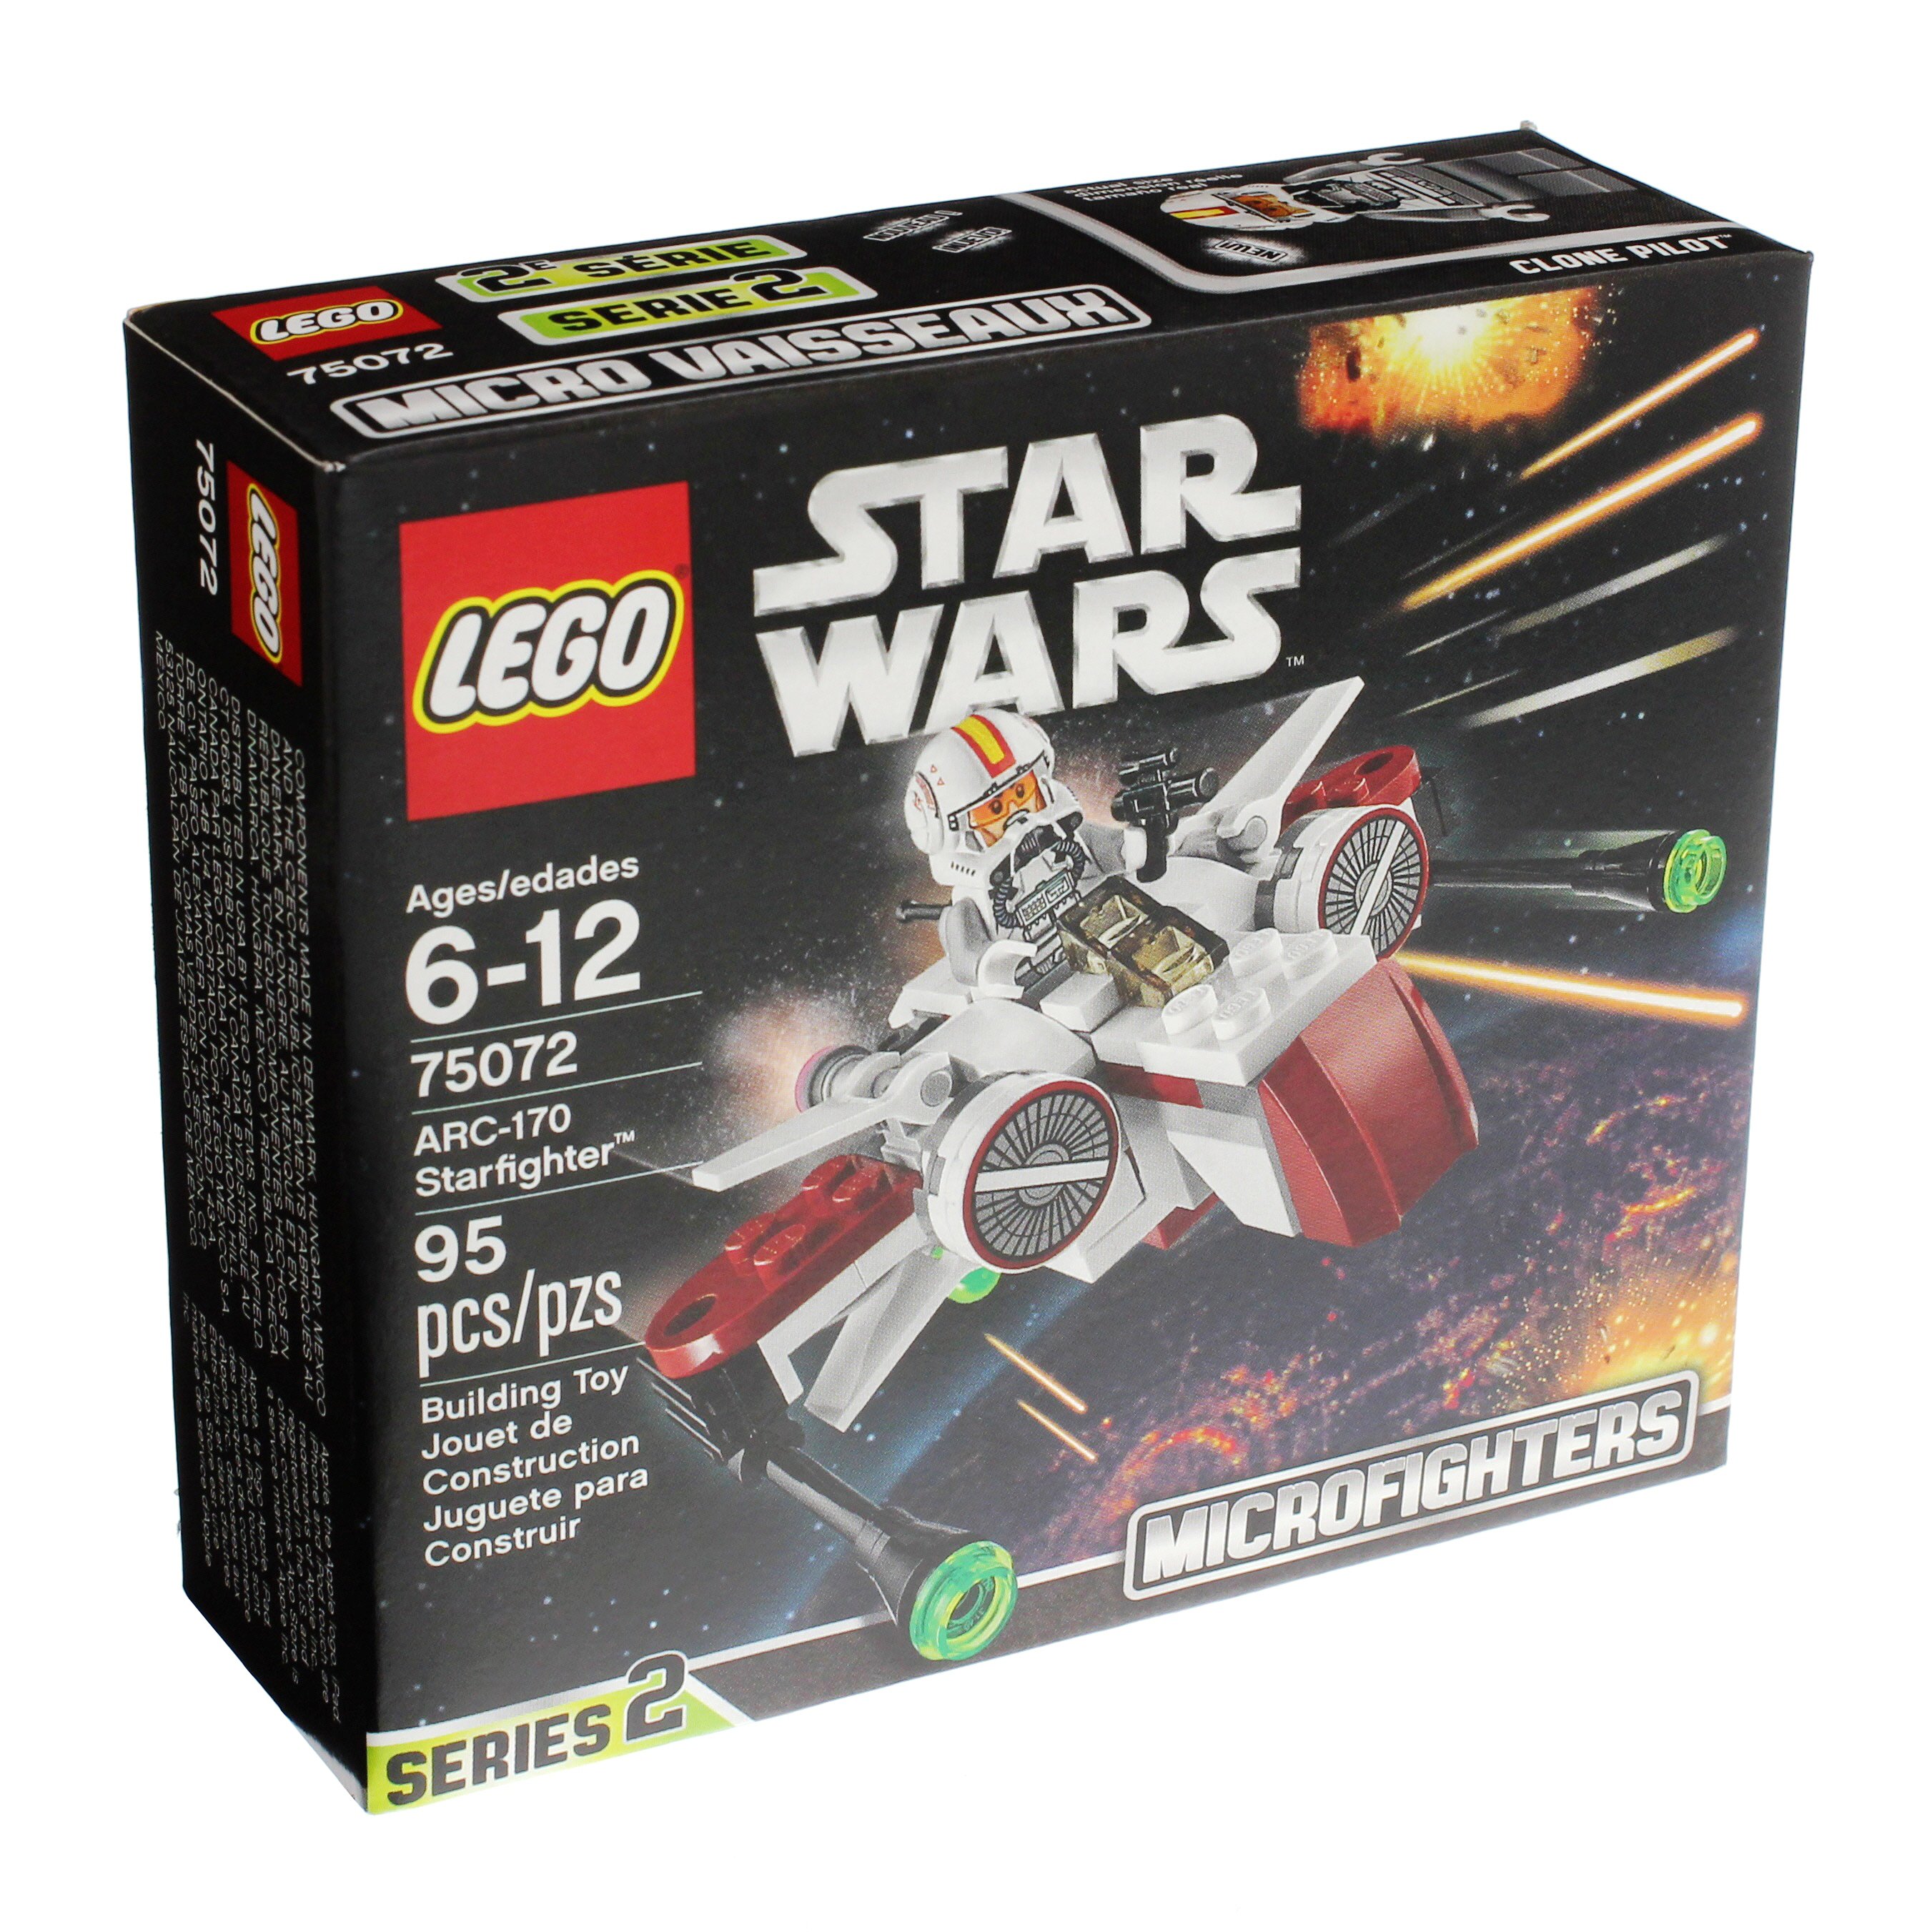 75072 LEGO Star Wars Arc-170 Starfighter 